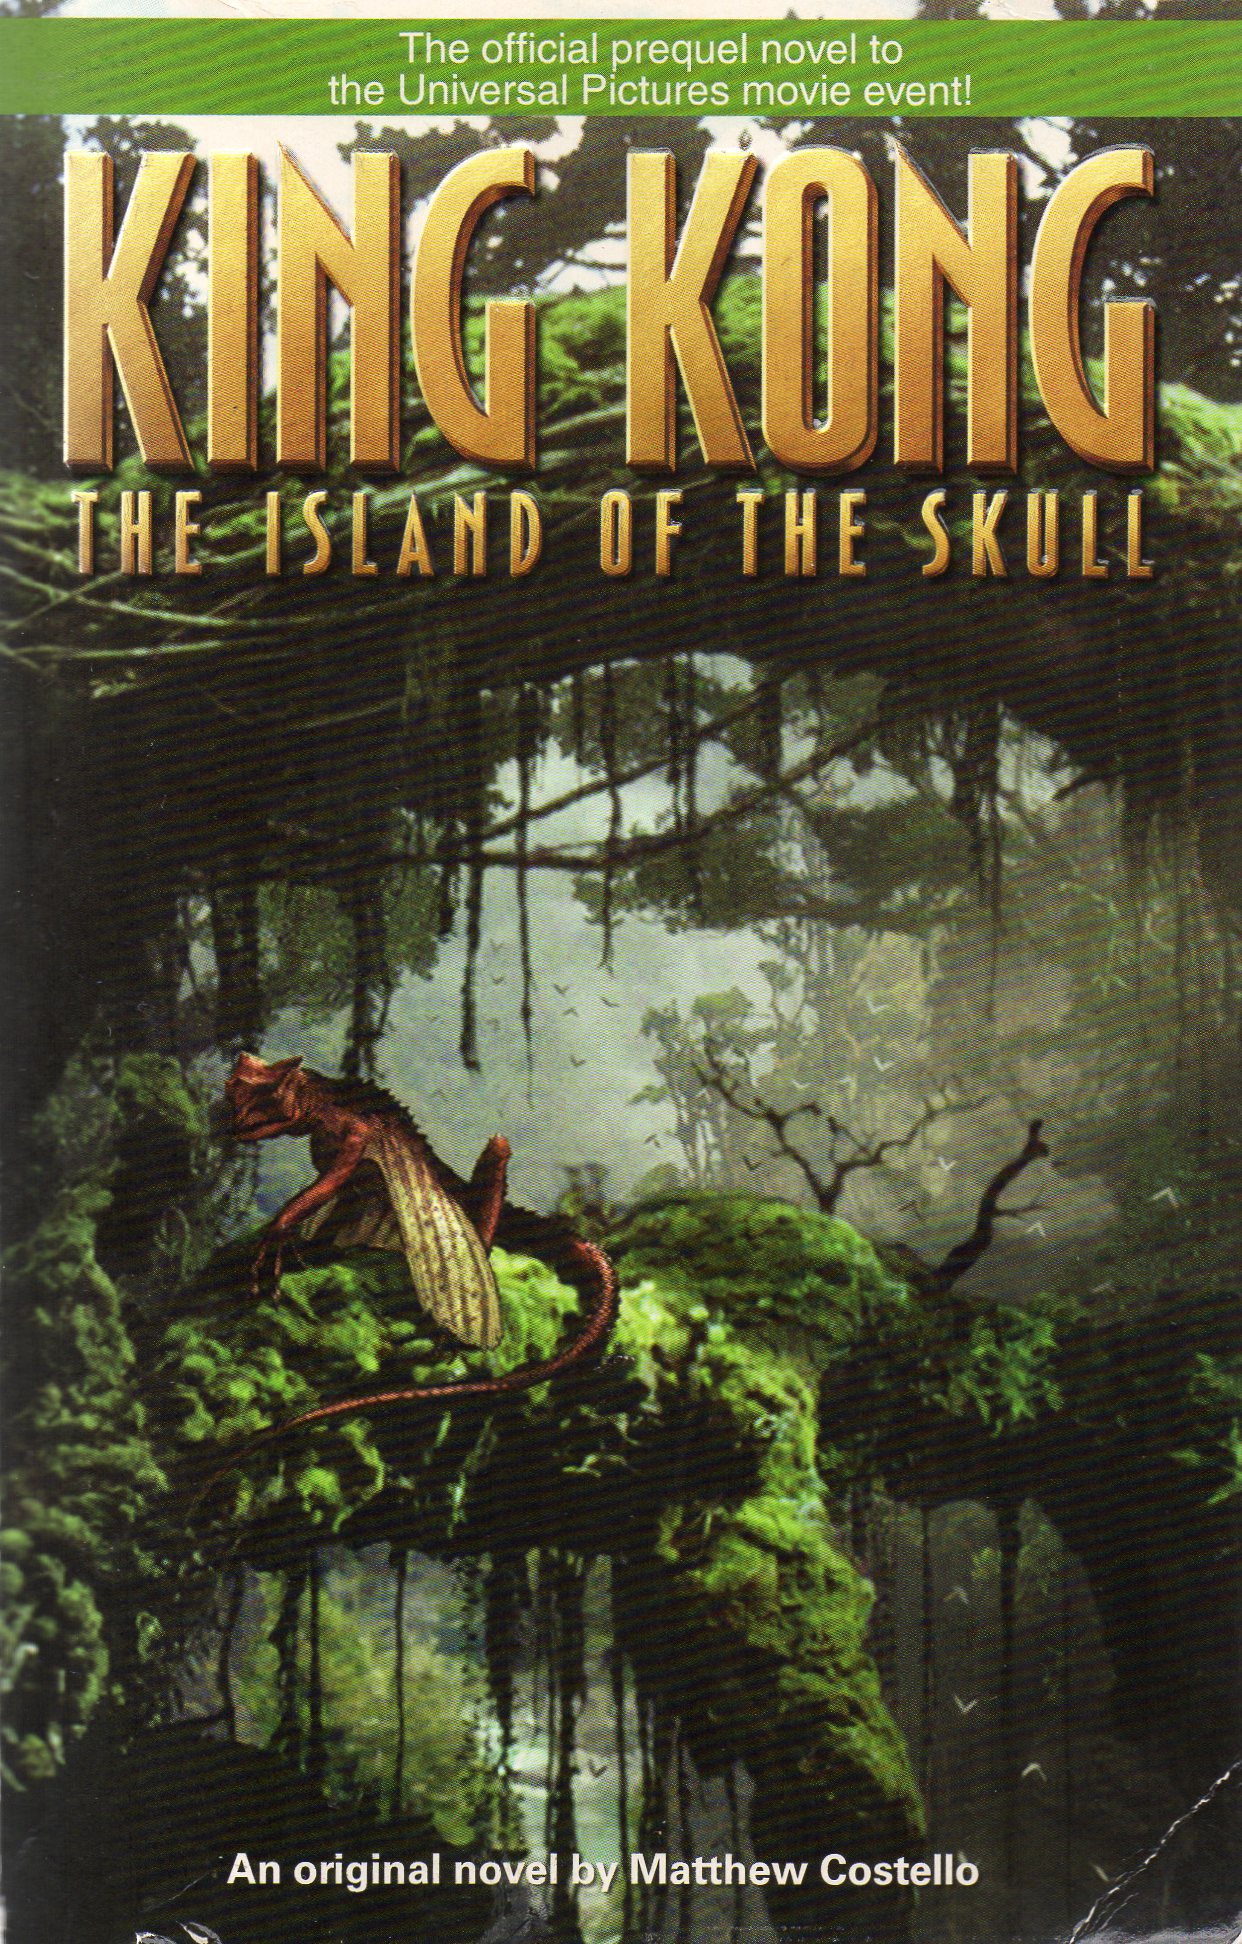 Skull Island  Wikizilla, the kaiju encyclopedia